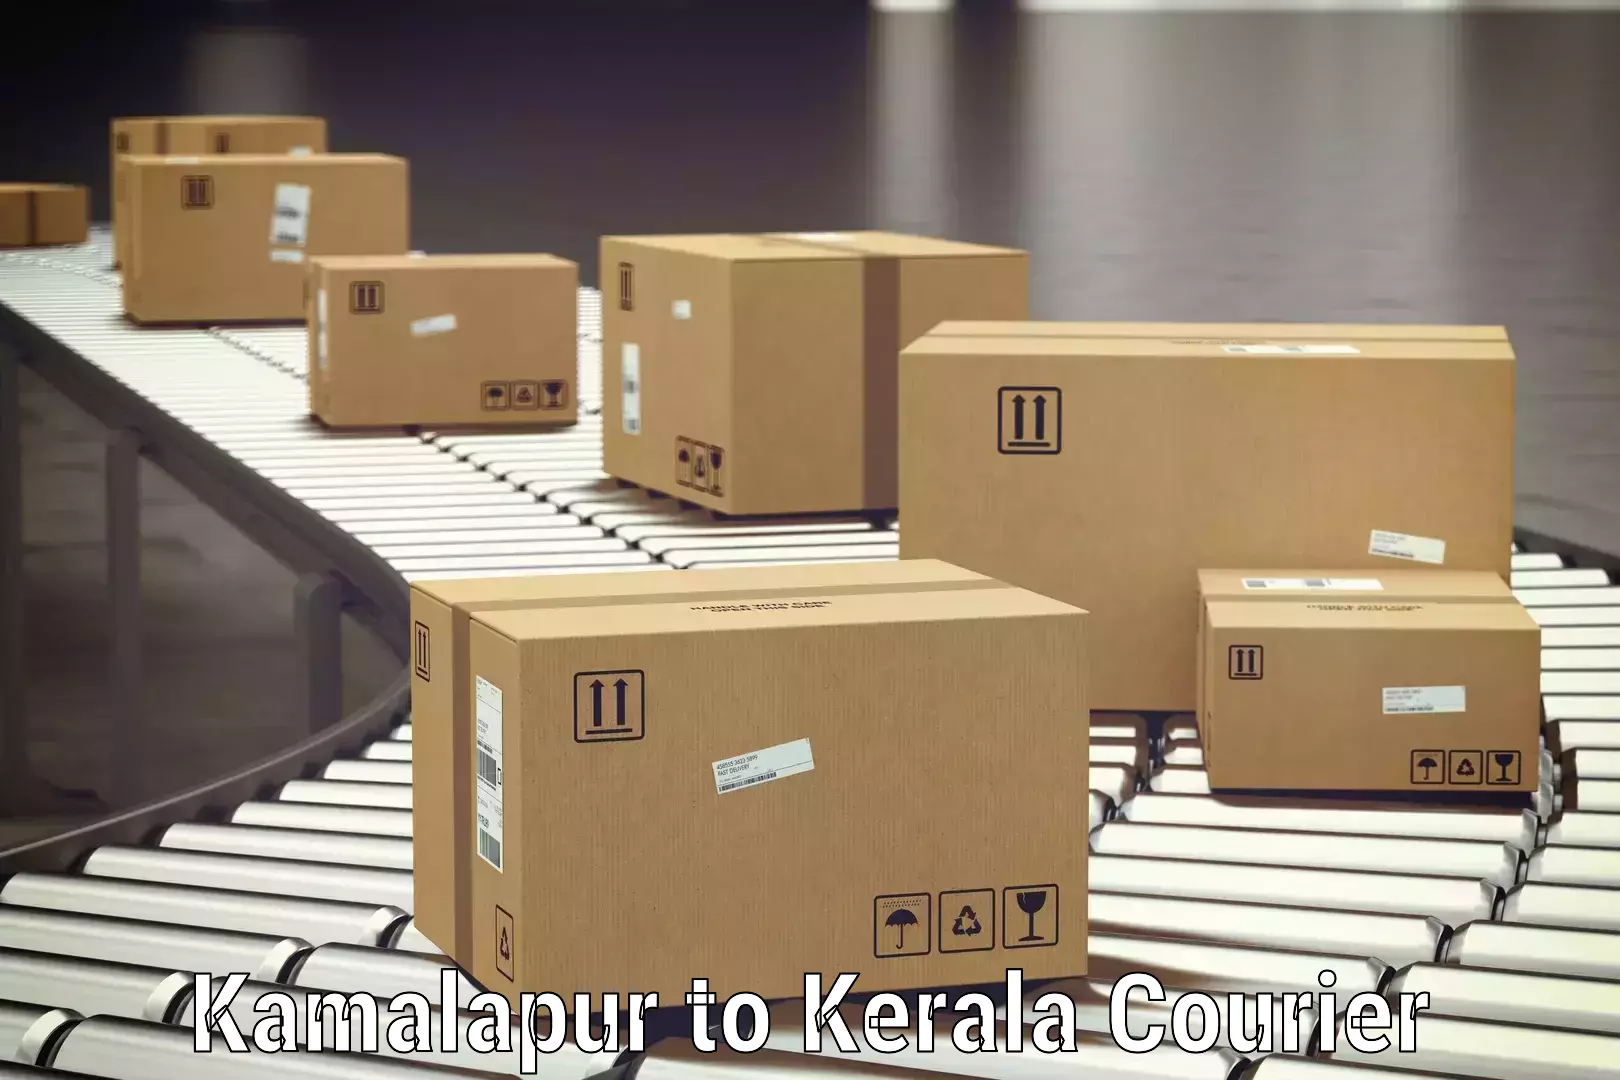 Baggage transport scheduler Kamalapur to Kerala